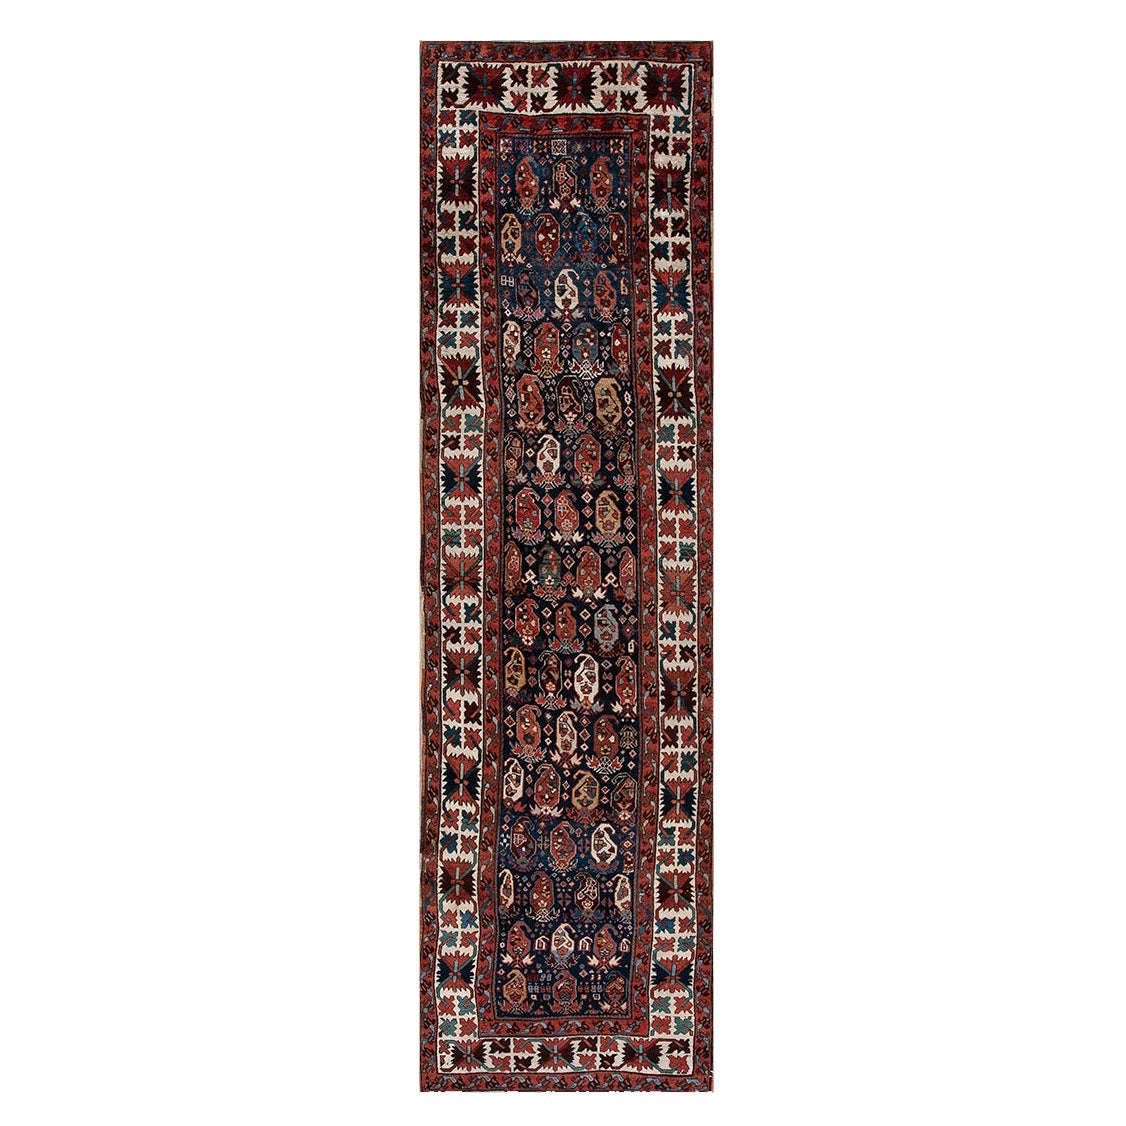 Kaukasischer Kasachischer Teppich des 19. Jahrhunderts ( 3'2" x 10'10" - 97 x 330)